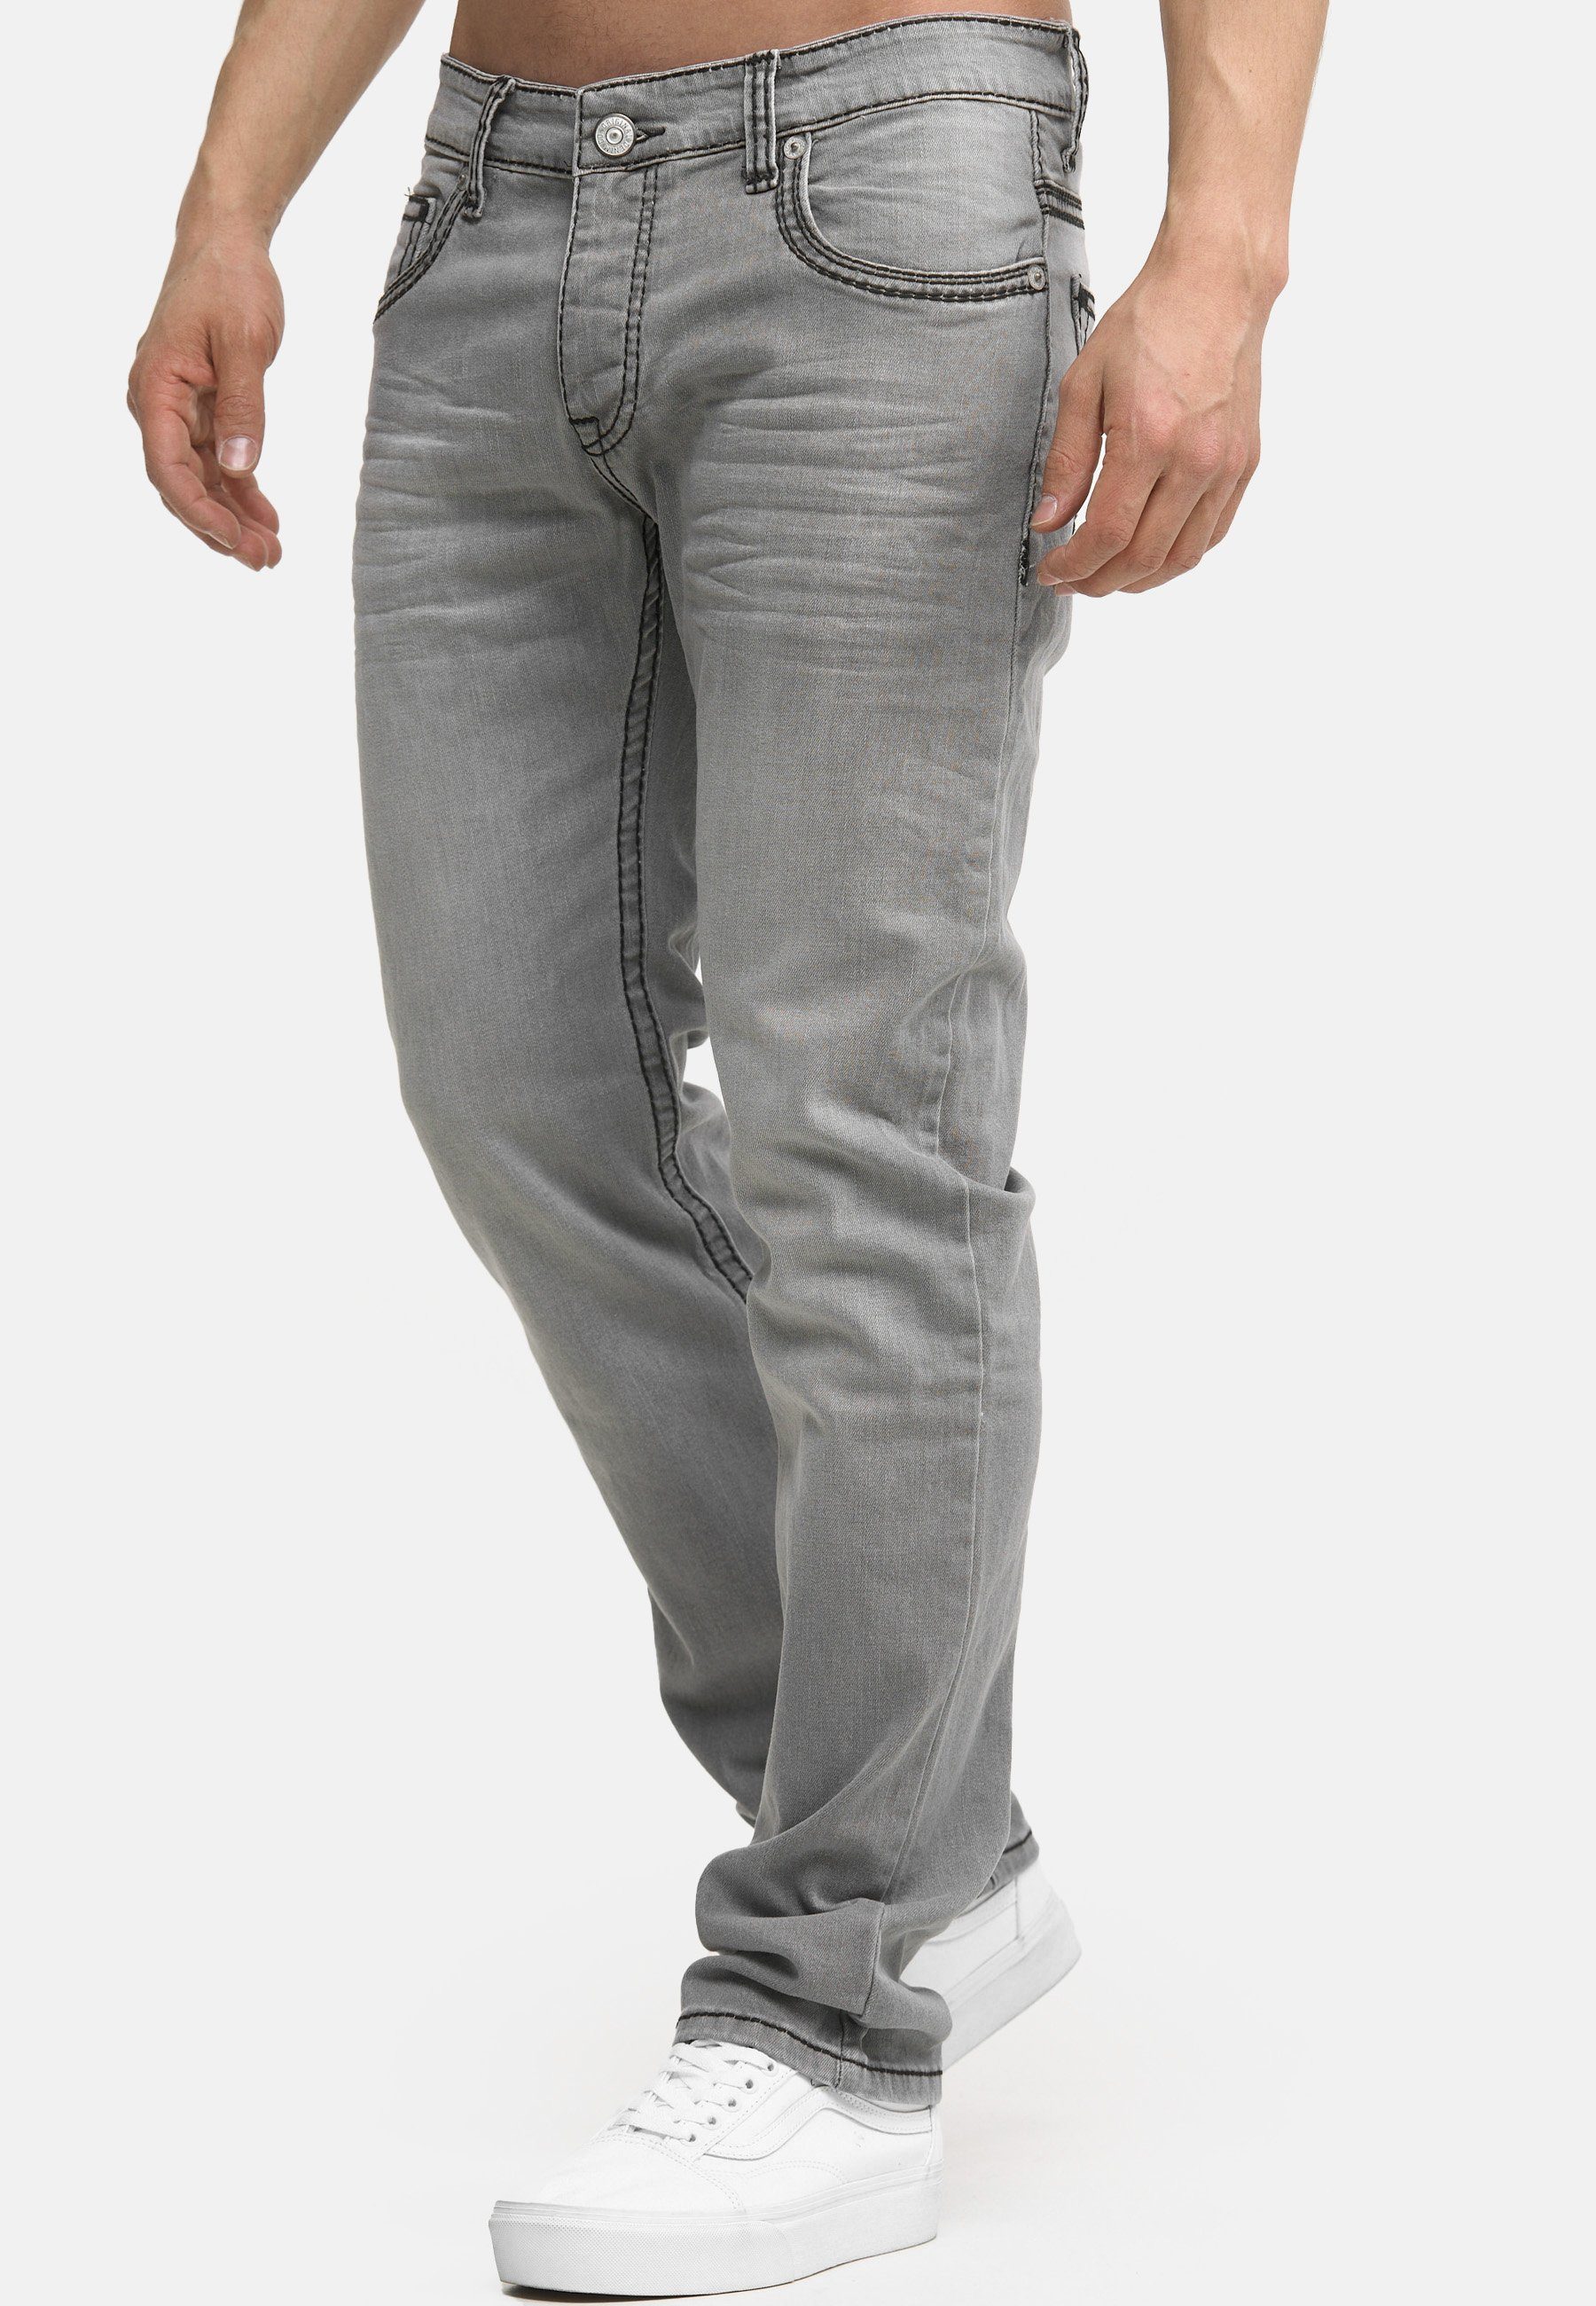 Regular Hose Männer Code47 grey Pocket Bootcut 903 Five Code47 Regular-fit-Jeans Jeans Denim Fit Herren